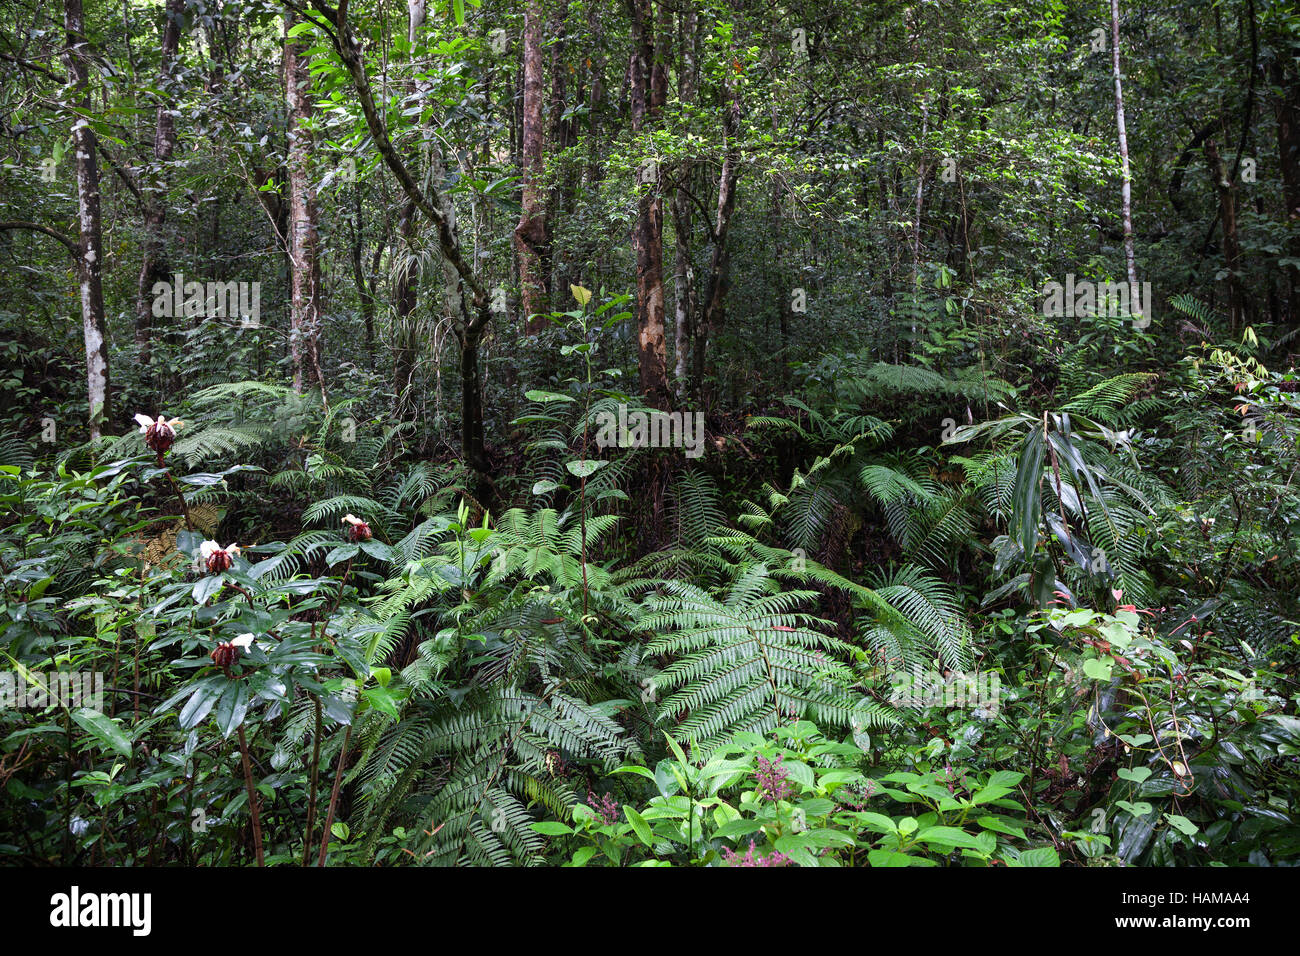 La végétation tropicale, la réserve forestière de Sinharaja, Sri Lanka Banque D'Images